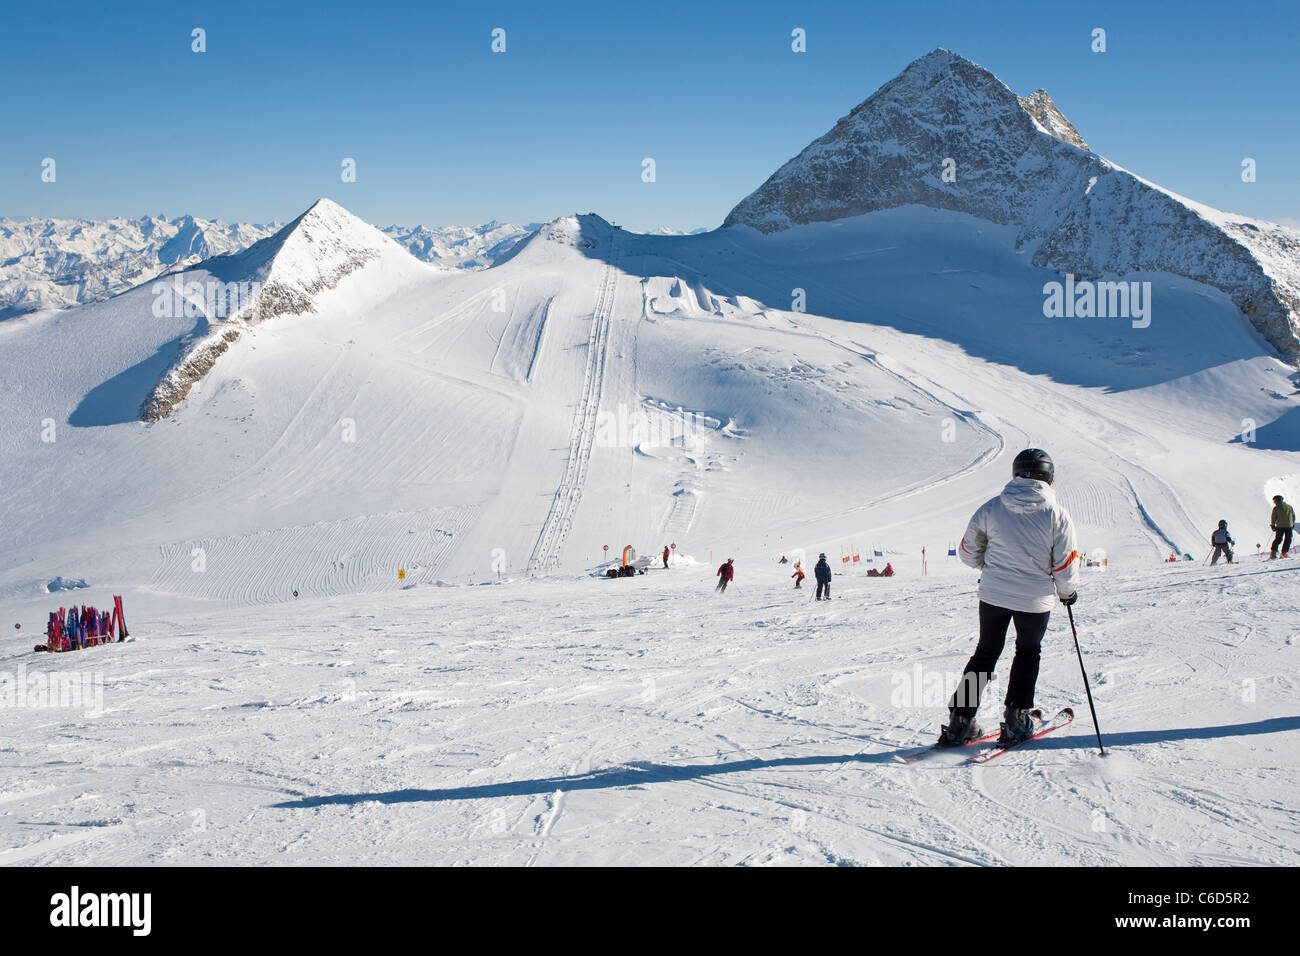 Skifahrer am Hintertuxer Gletscher, sciatore presso il ghiacciaio Hintertuxer Foto Stock